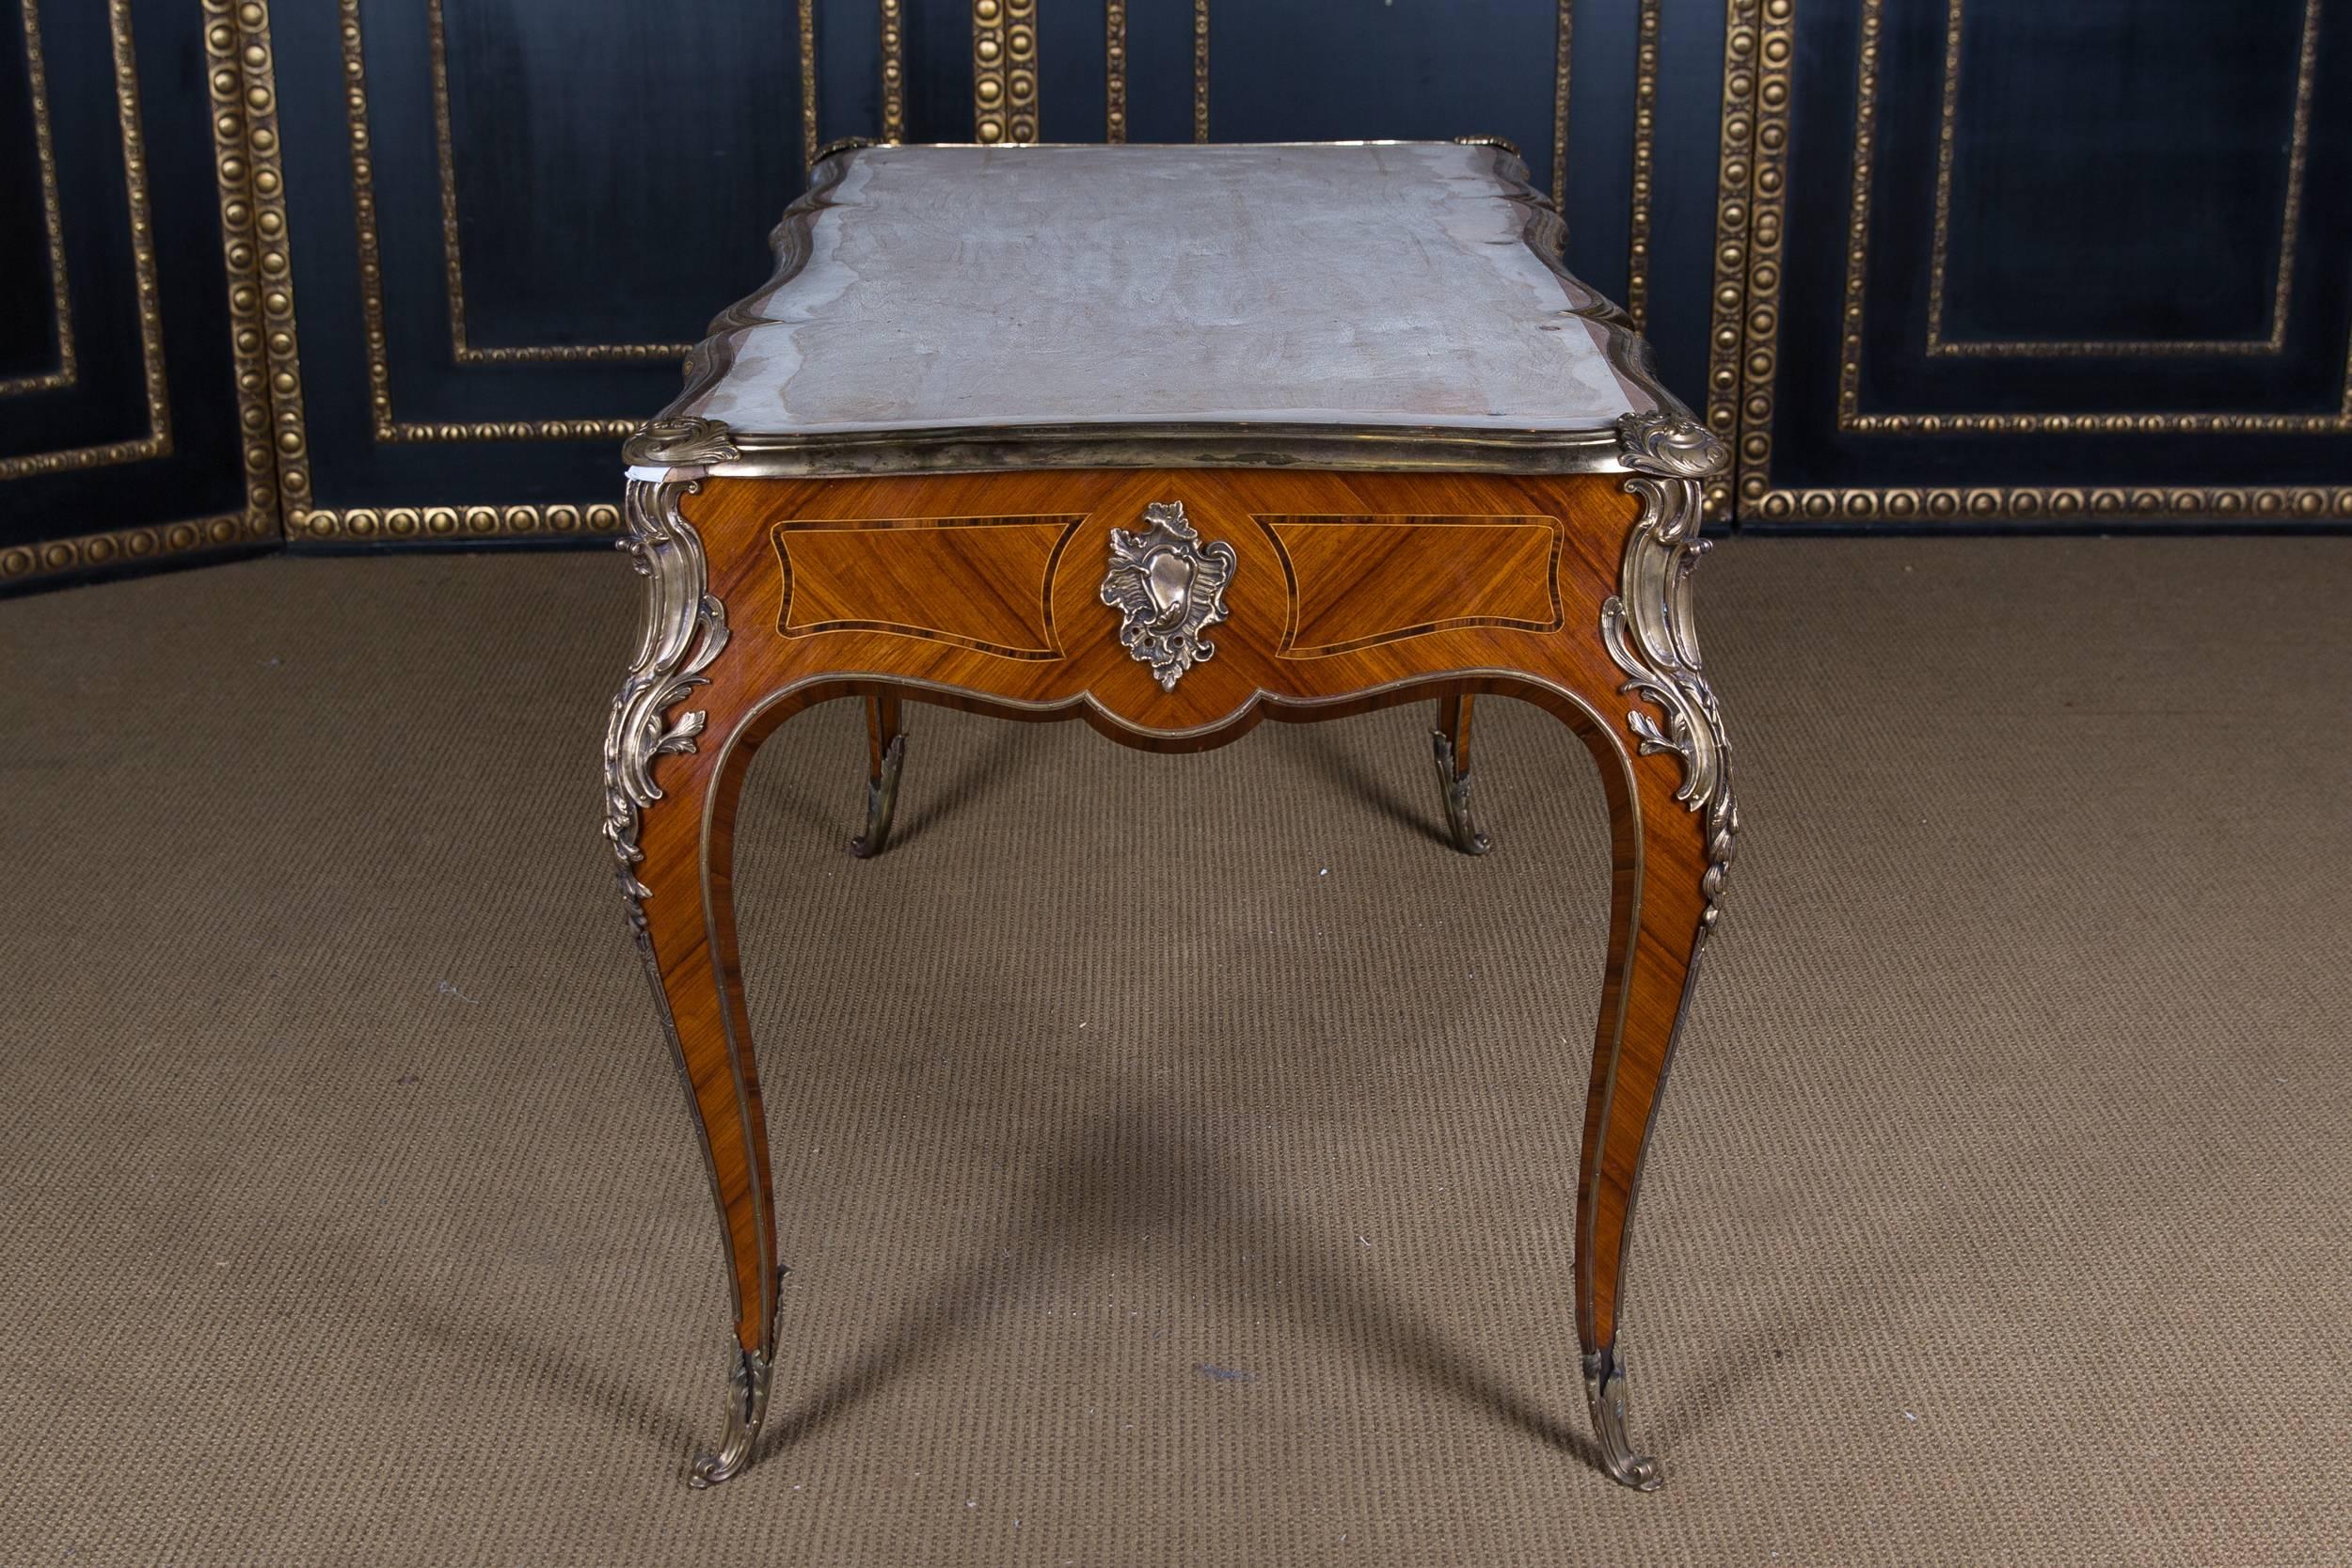  20th Century Desk Bureau Plat in Louis XV Style Excellent Quality 3